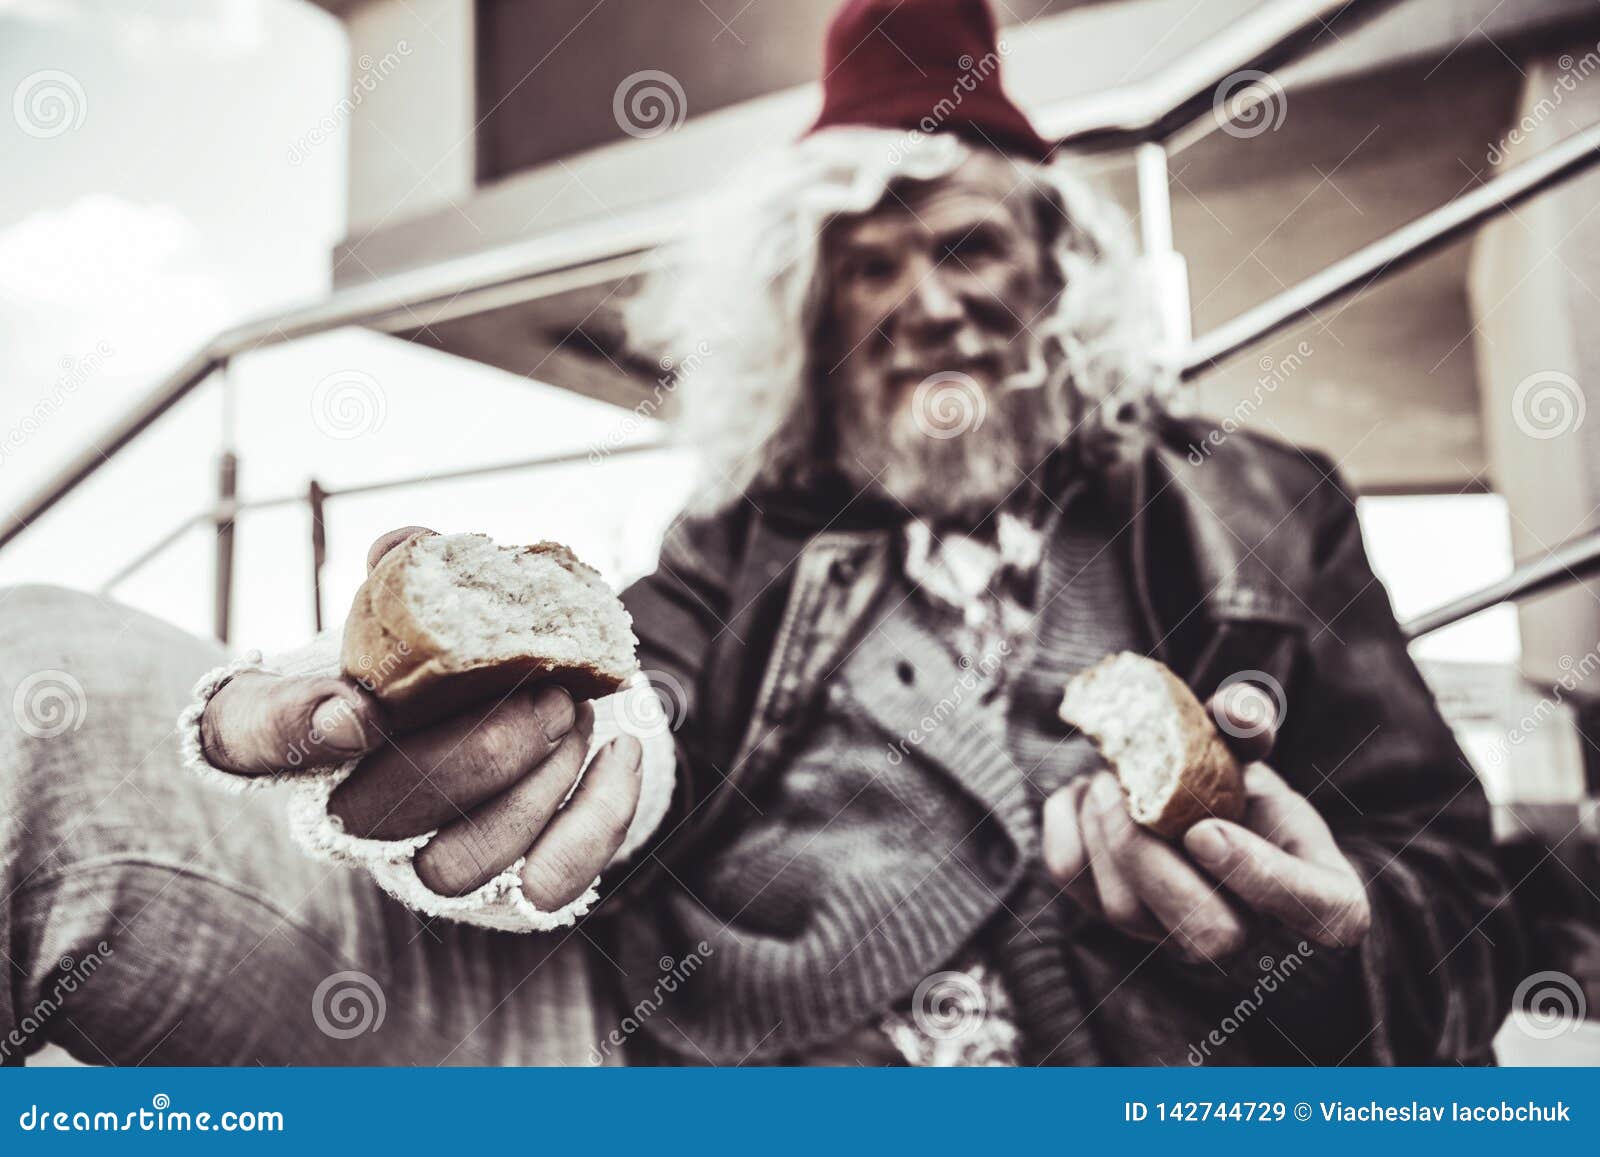 Съели бомжа. Колоритный дед. Бомж с куском хлеба. Старик и хлеб. Нищий с куском хлеба.